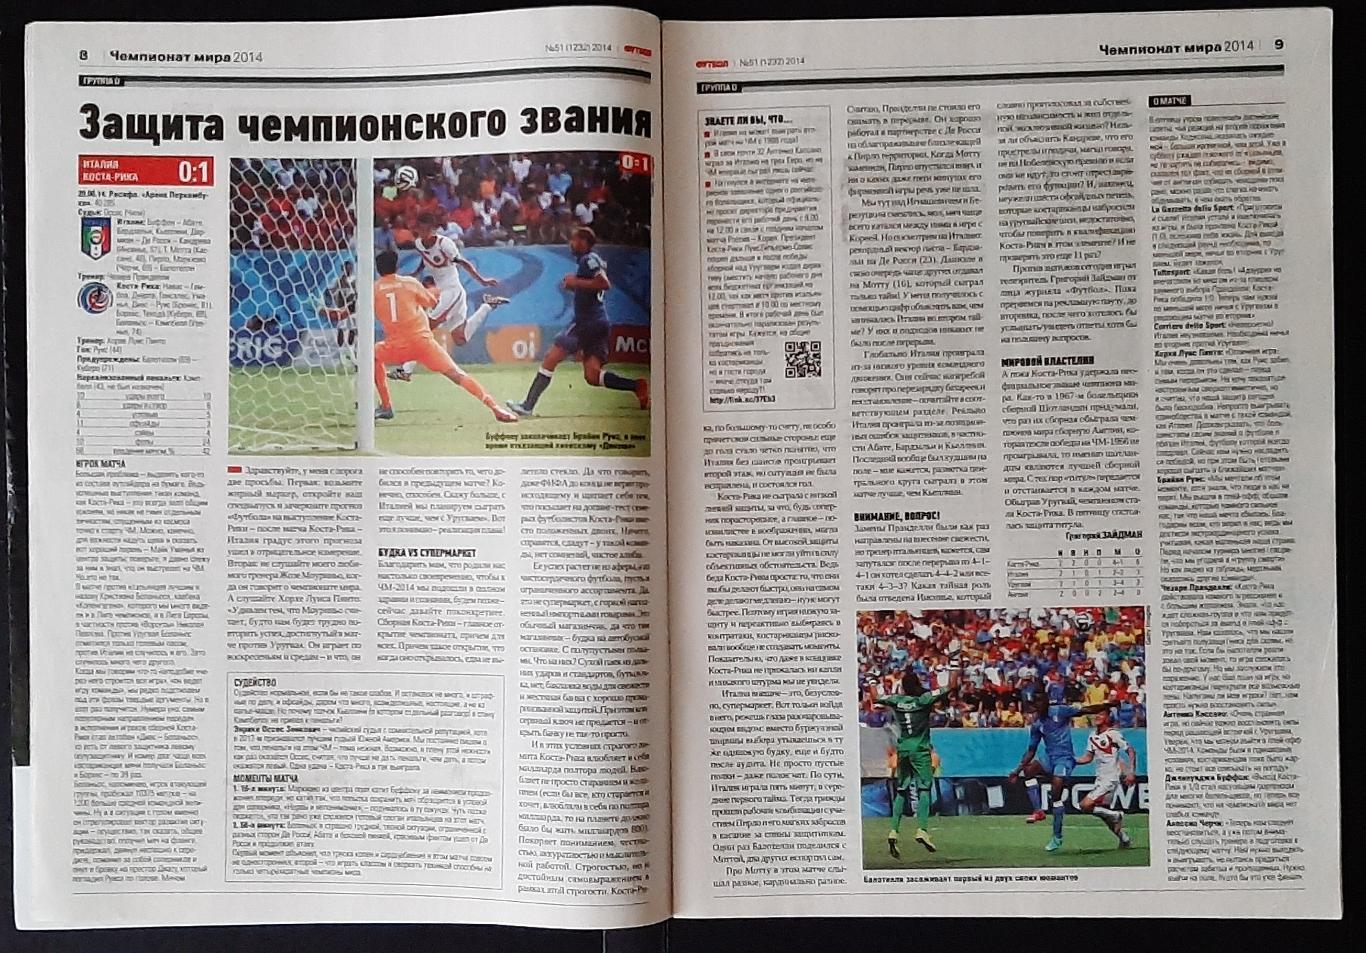 Журнал Футбол # 51 2014 матчі Чемпіонату світу. 2